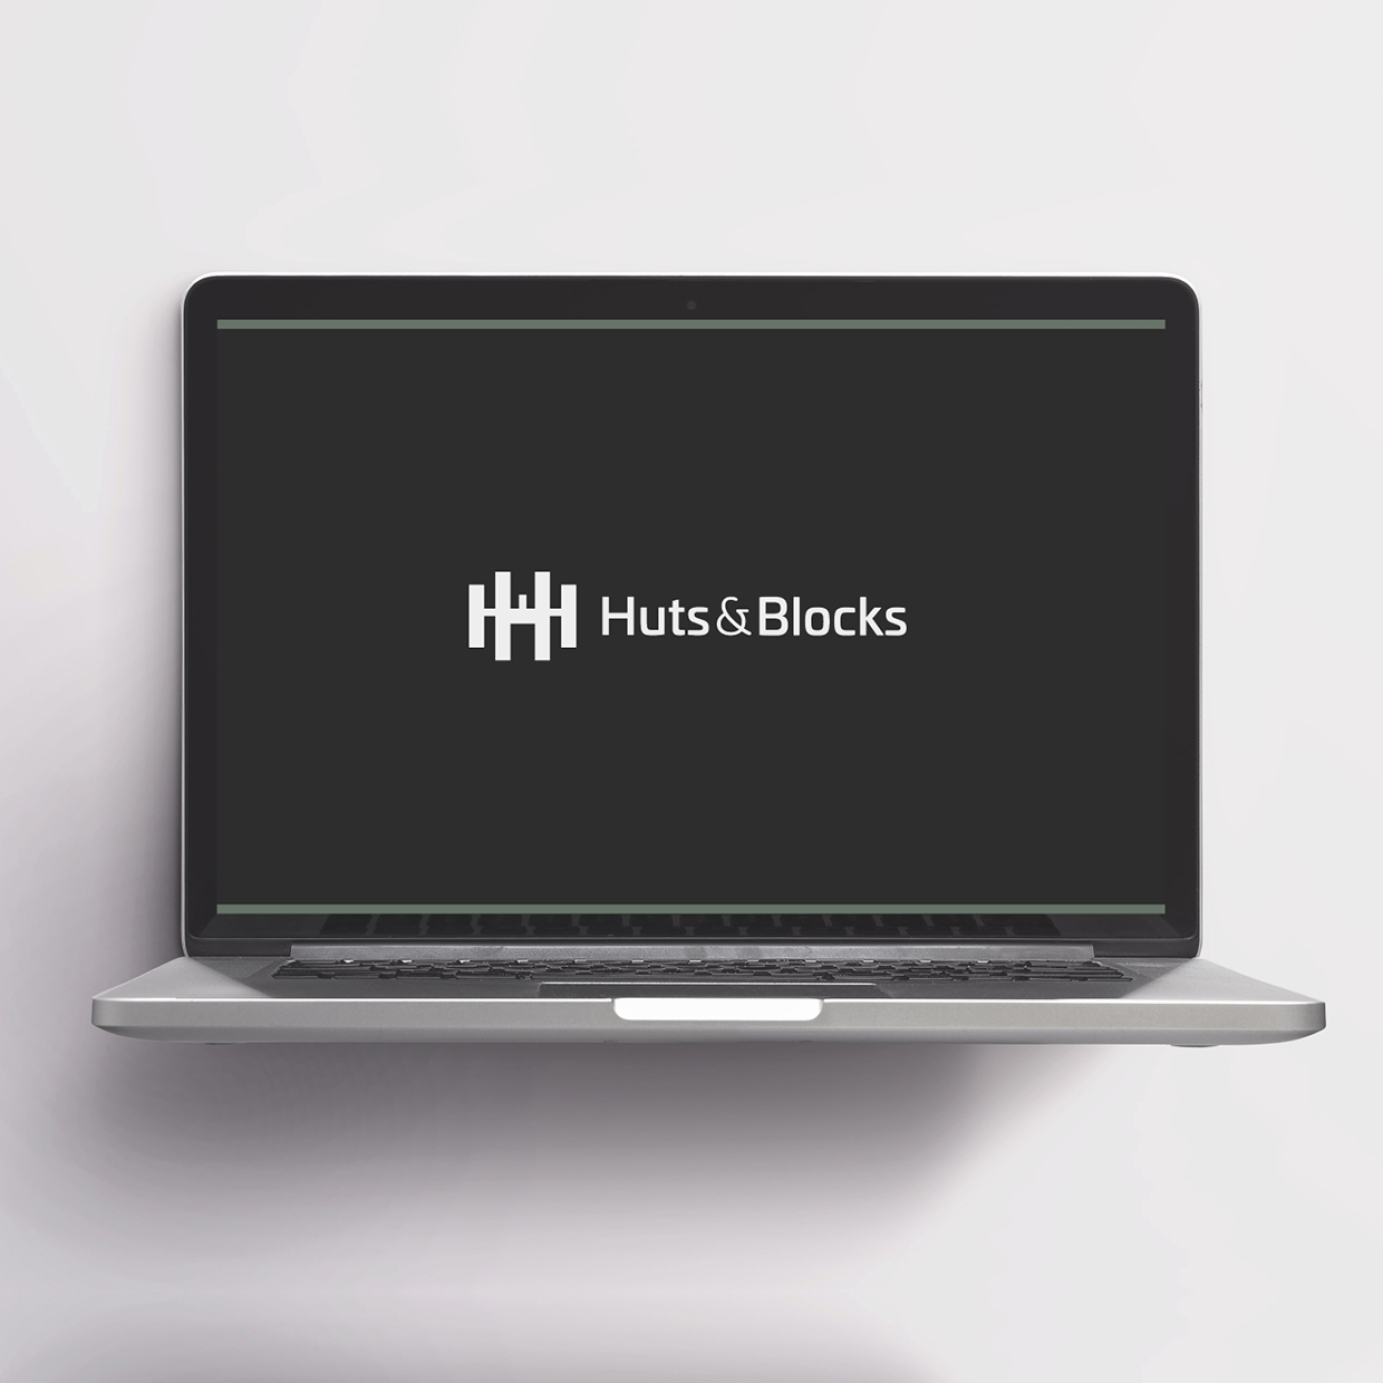 Huts & Blocks